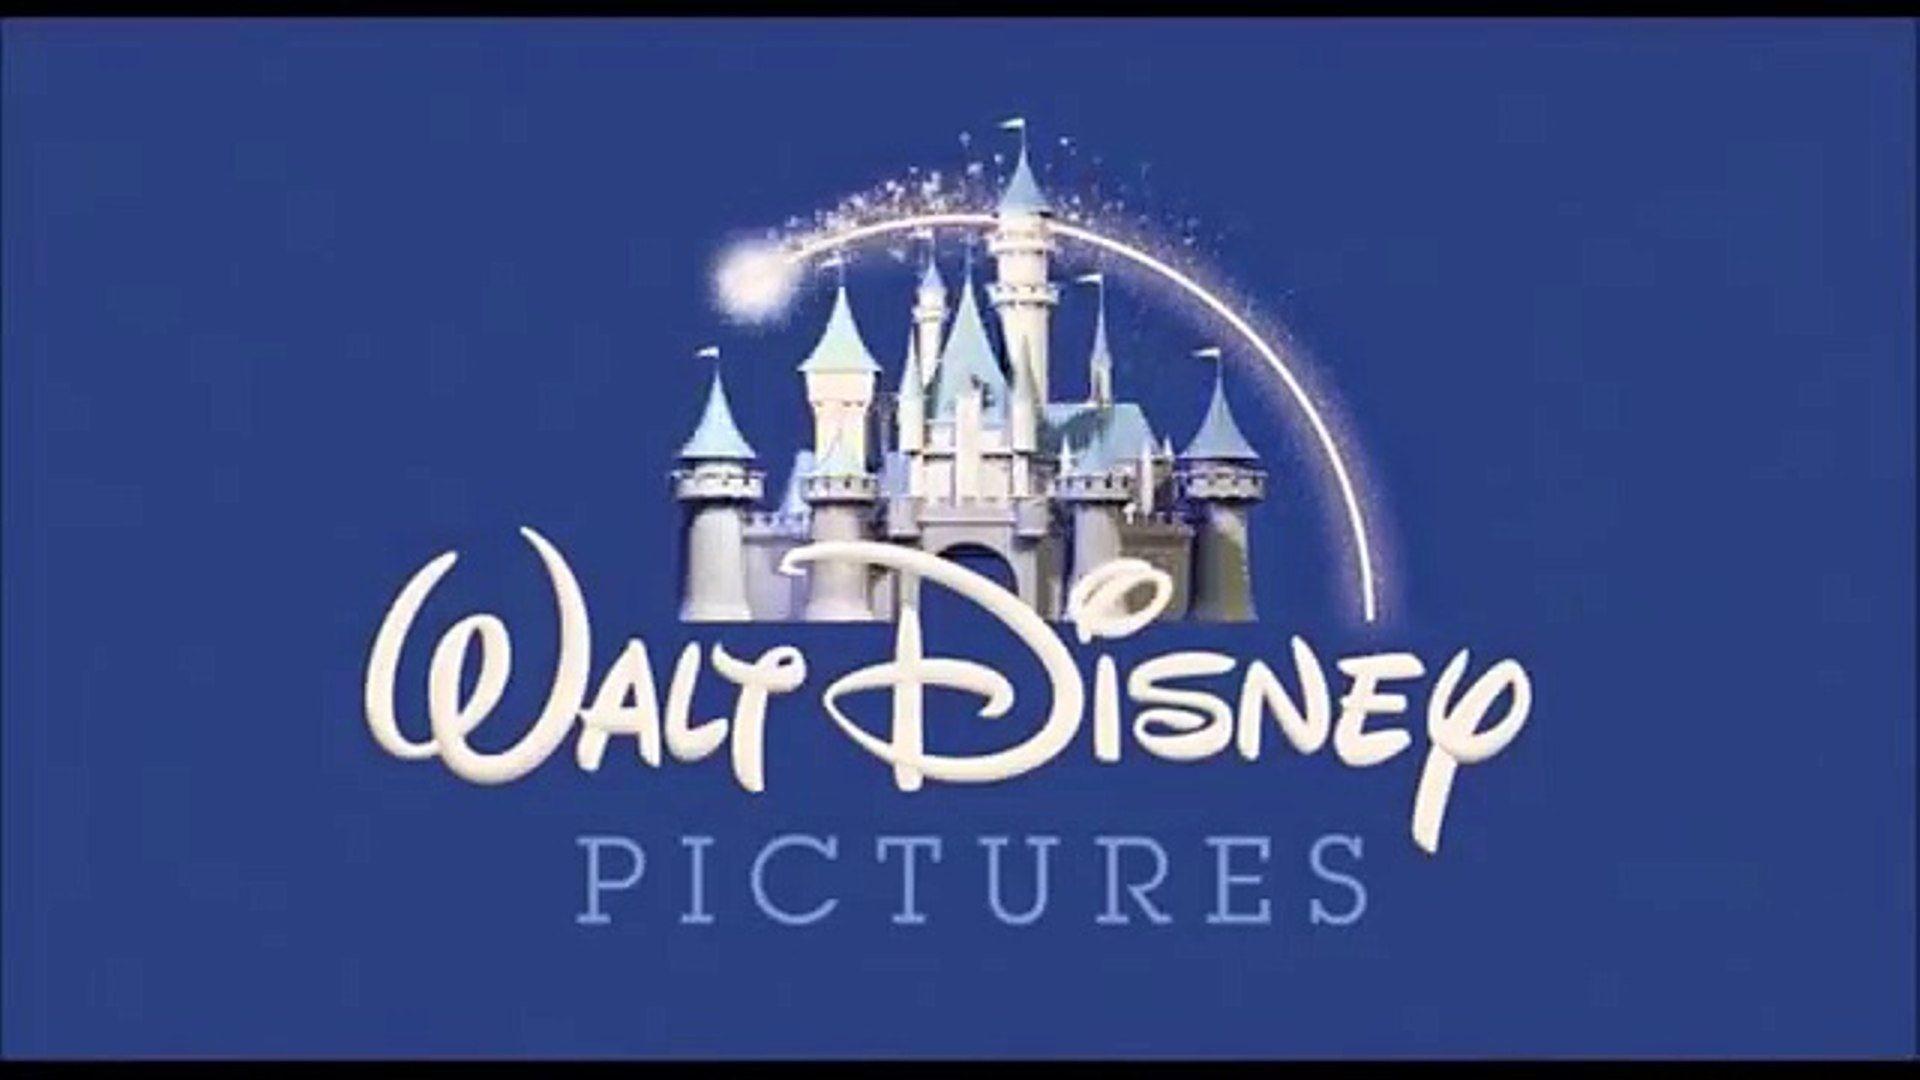 Pixar Animation Studios Logo - Walt Disney Picture Pixar Animation Studios With Wall E & BnL Logo